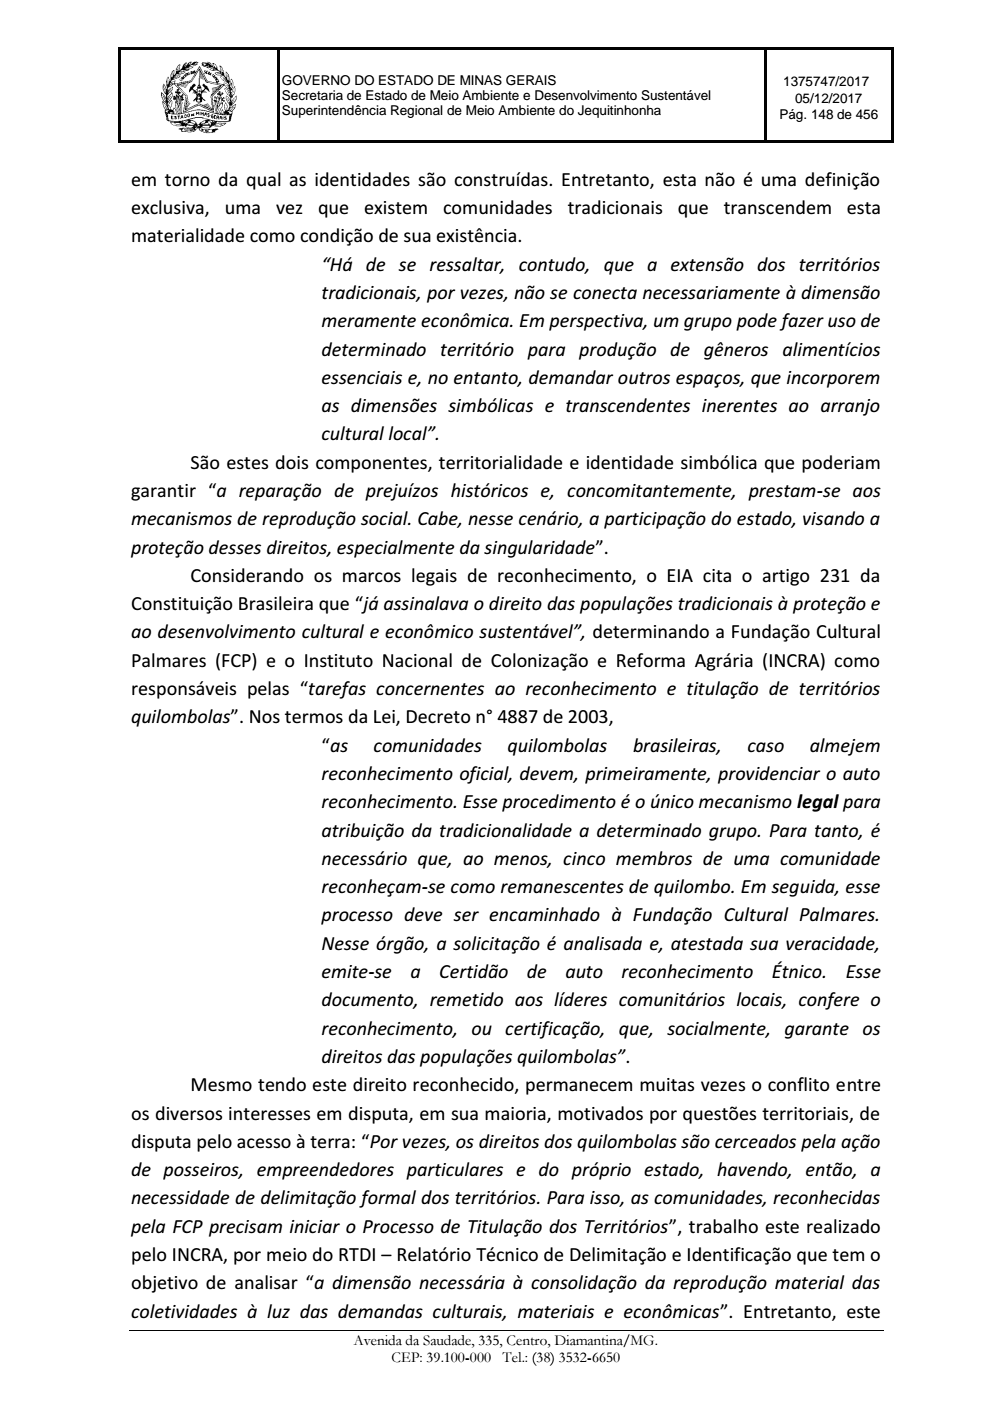 Page 148 from Parecer único da Secretaria de estado de Meio Ambiente e Desenvolvimento Sustentável (SEMAD)